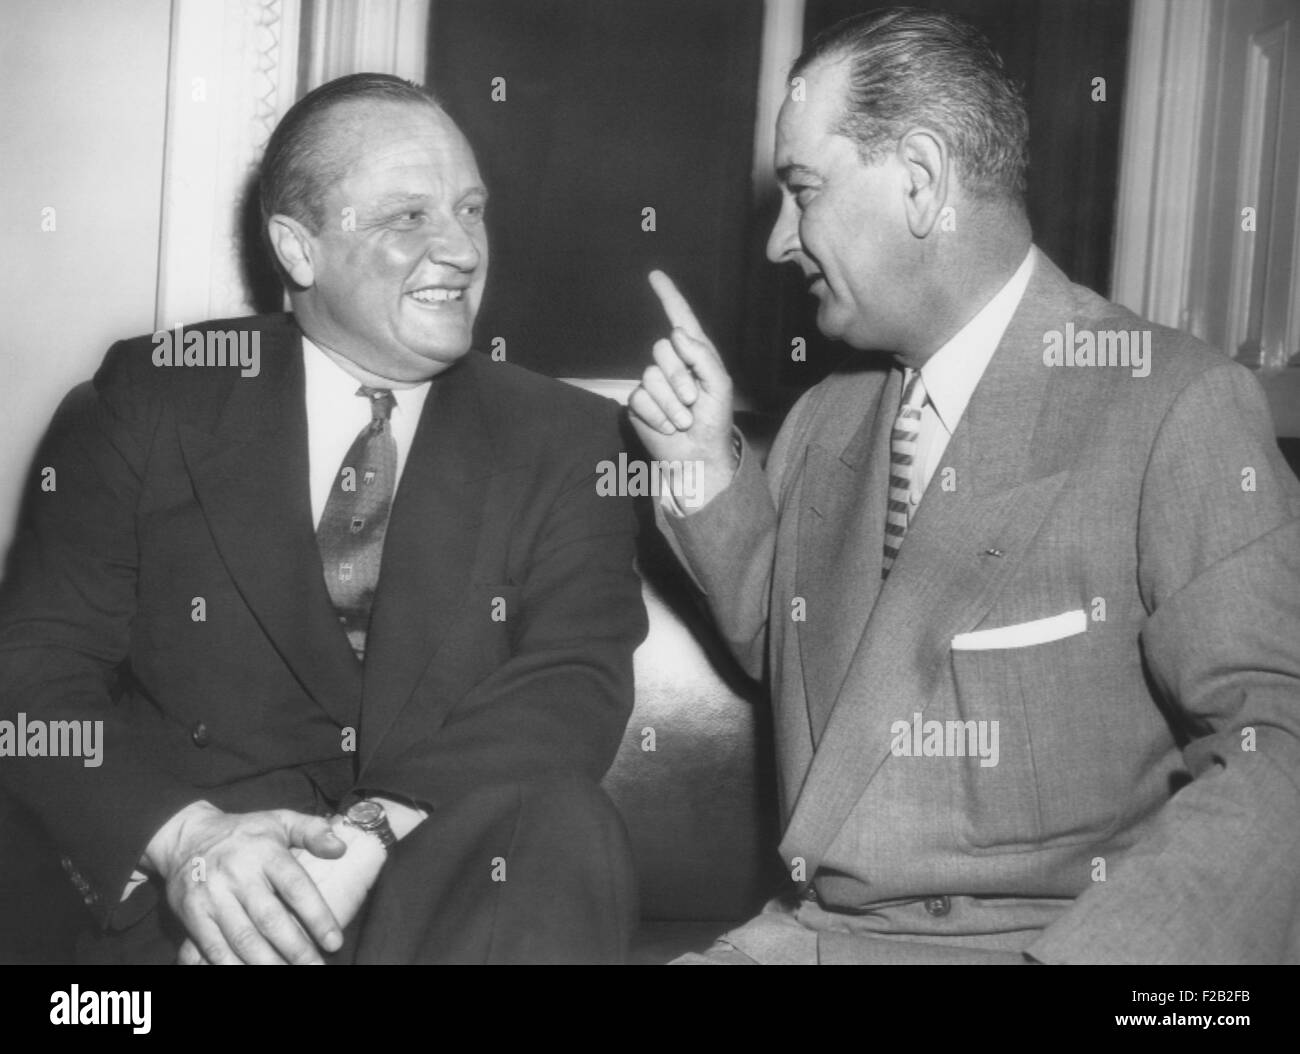 Le sénateur républicain William Knowland démocratique avec Sen. Lyndon Johnson. Knowland LBJ réussi comme majorité au Sénat, le 3 janvier 1955. CSU (2015  7 363) Banque D'Images